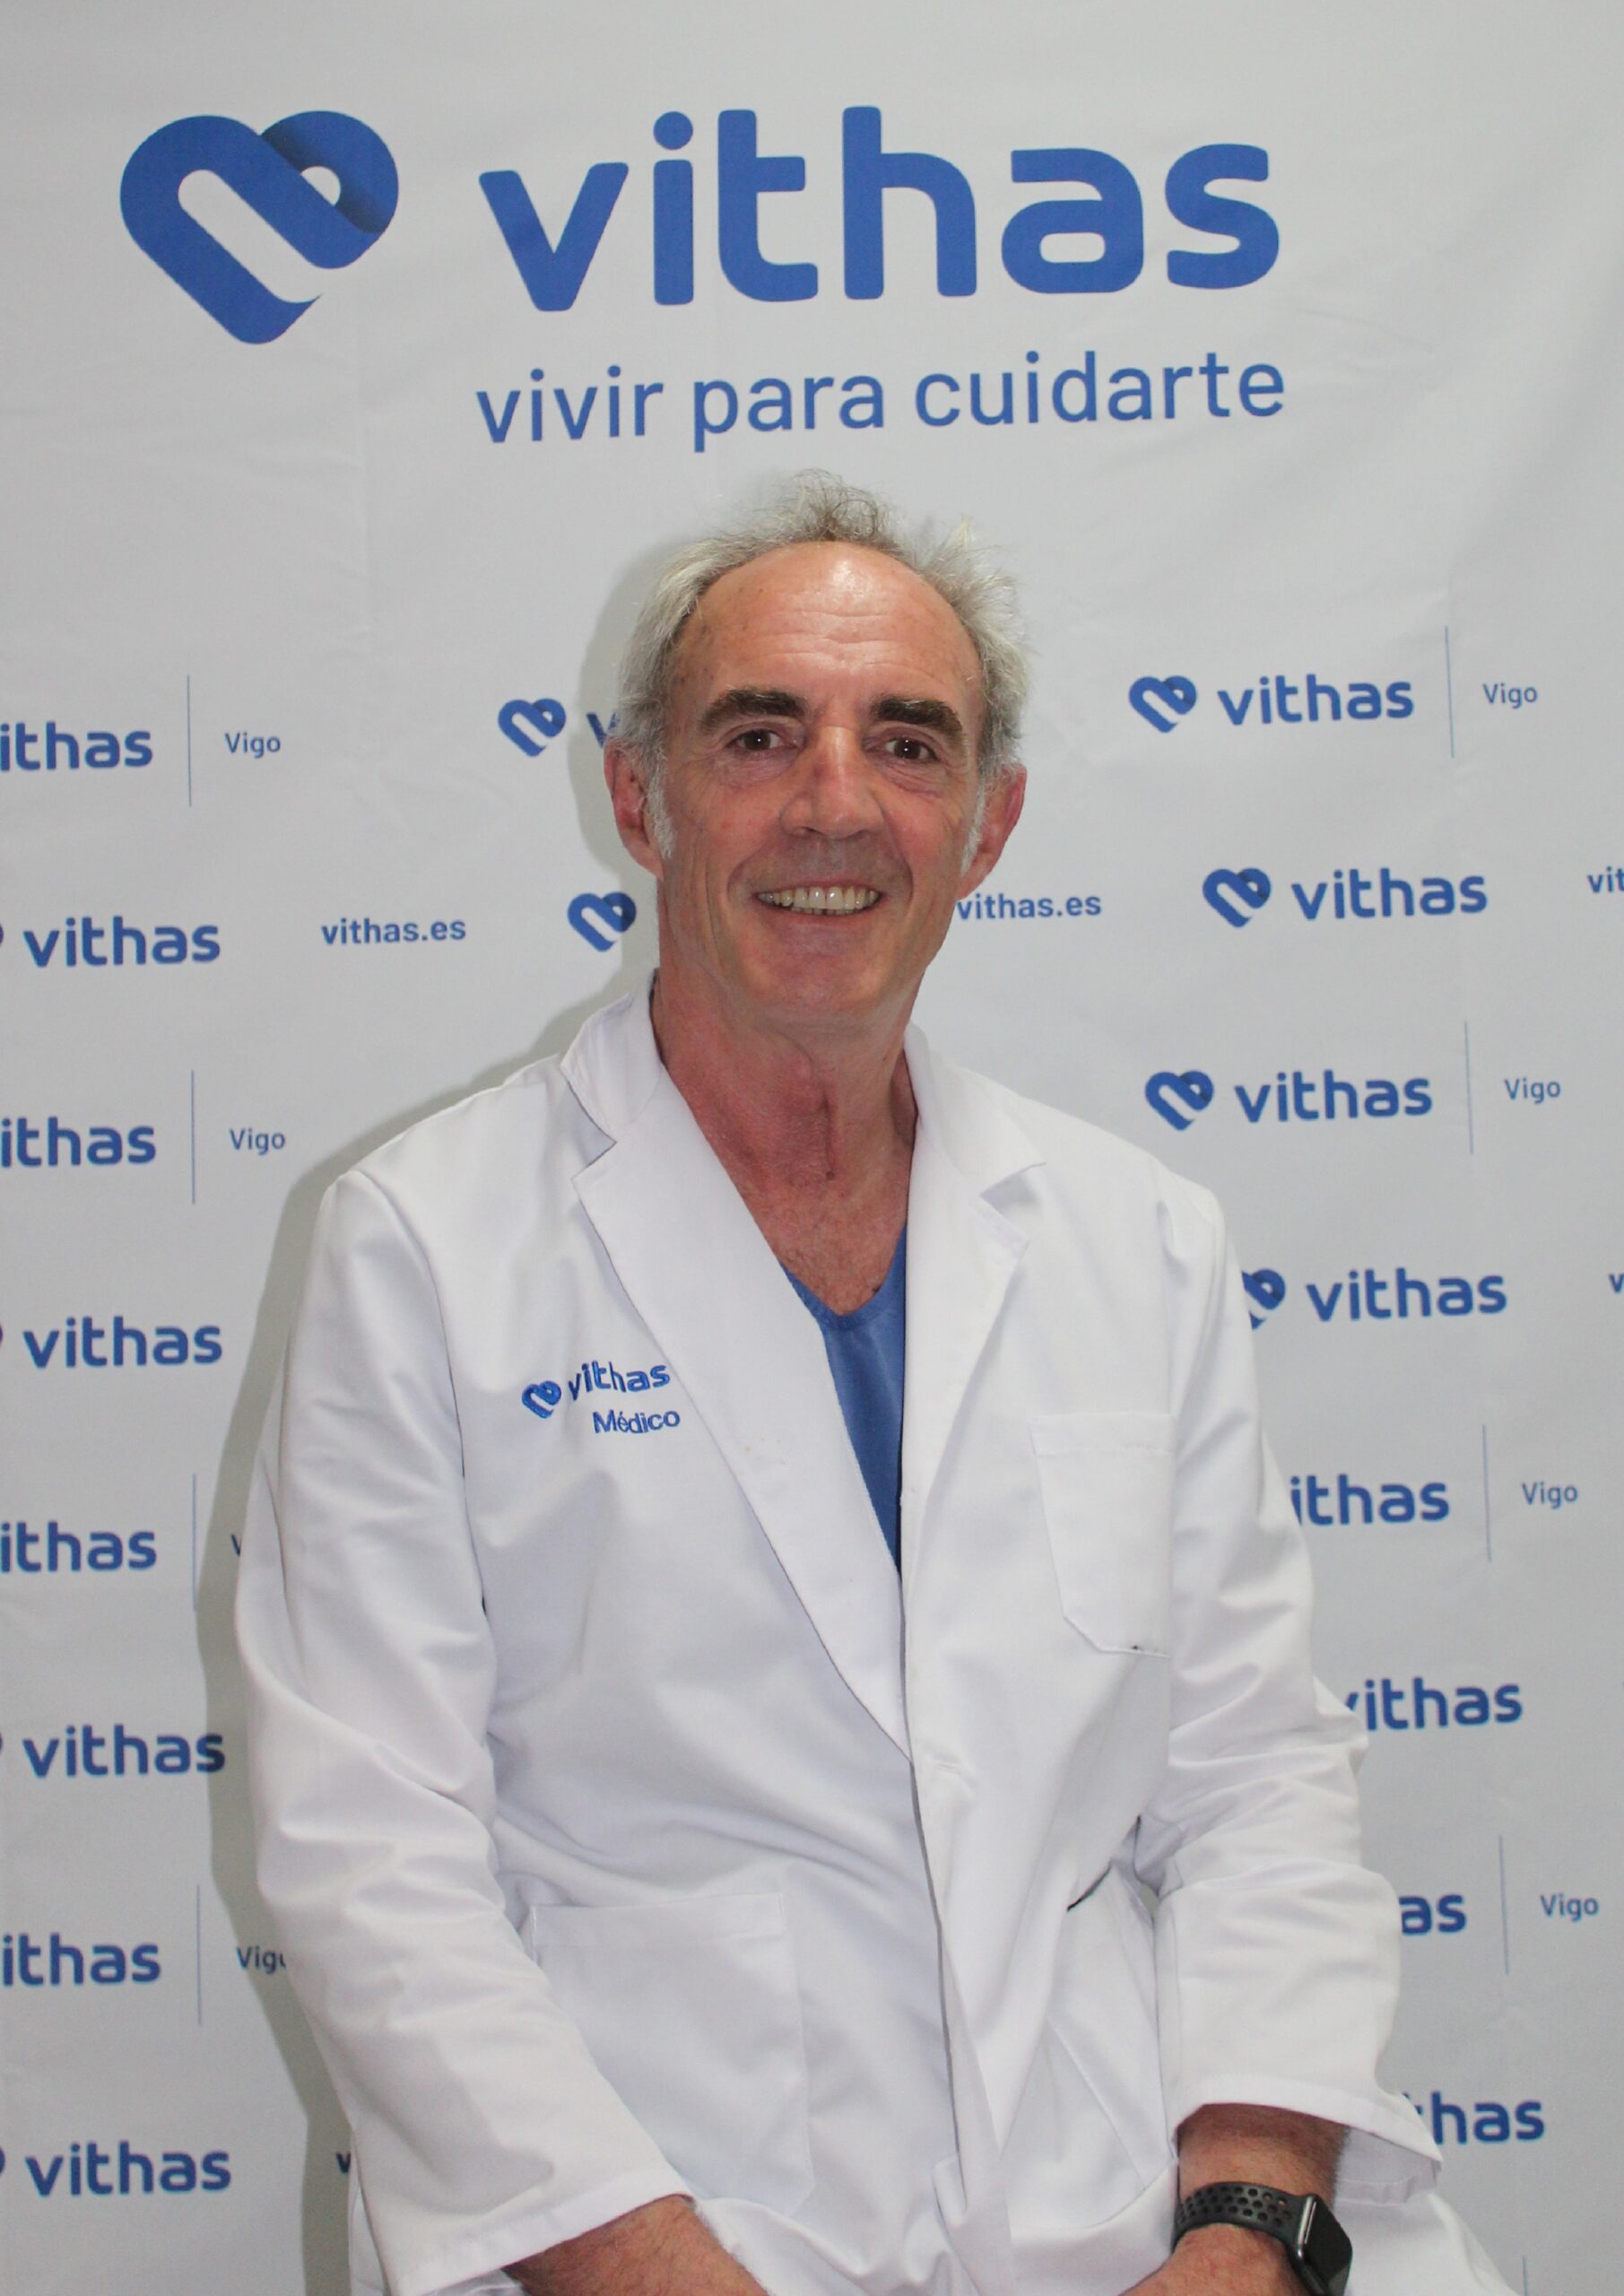 Dr. José Manuel Martínez-Sayanes López